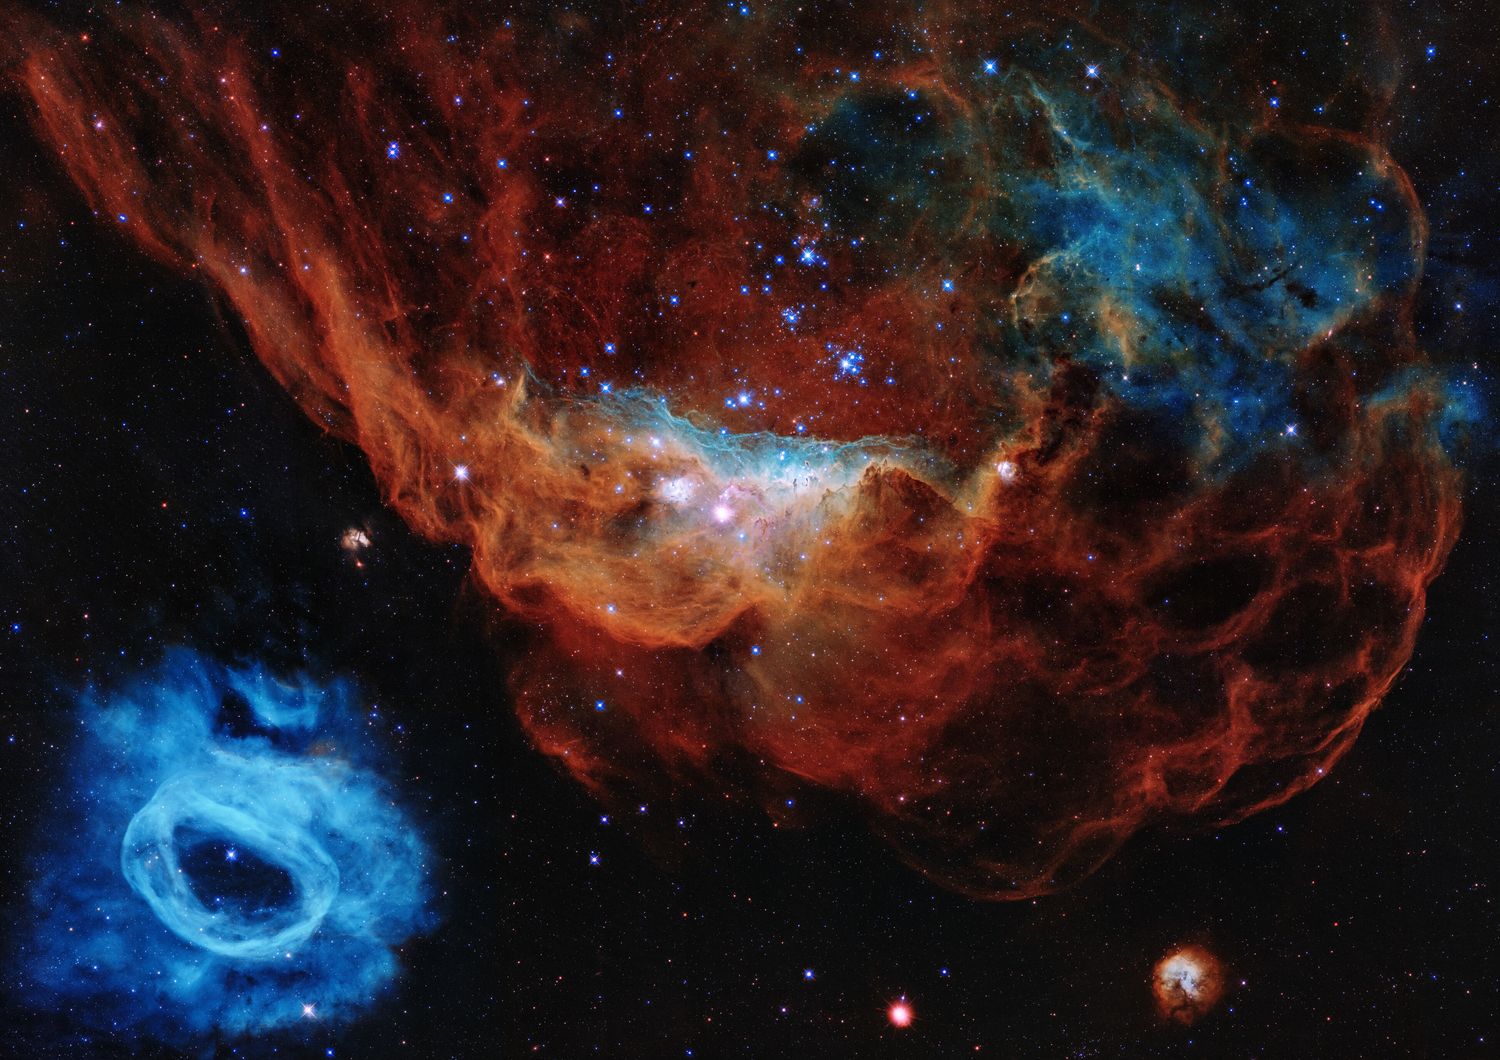 La nebulosa gigante&nbsp;NGC 2014 e la vicina NGC 2020&nbsp;osservate dal telescopio Hubble